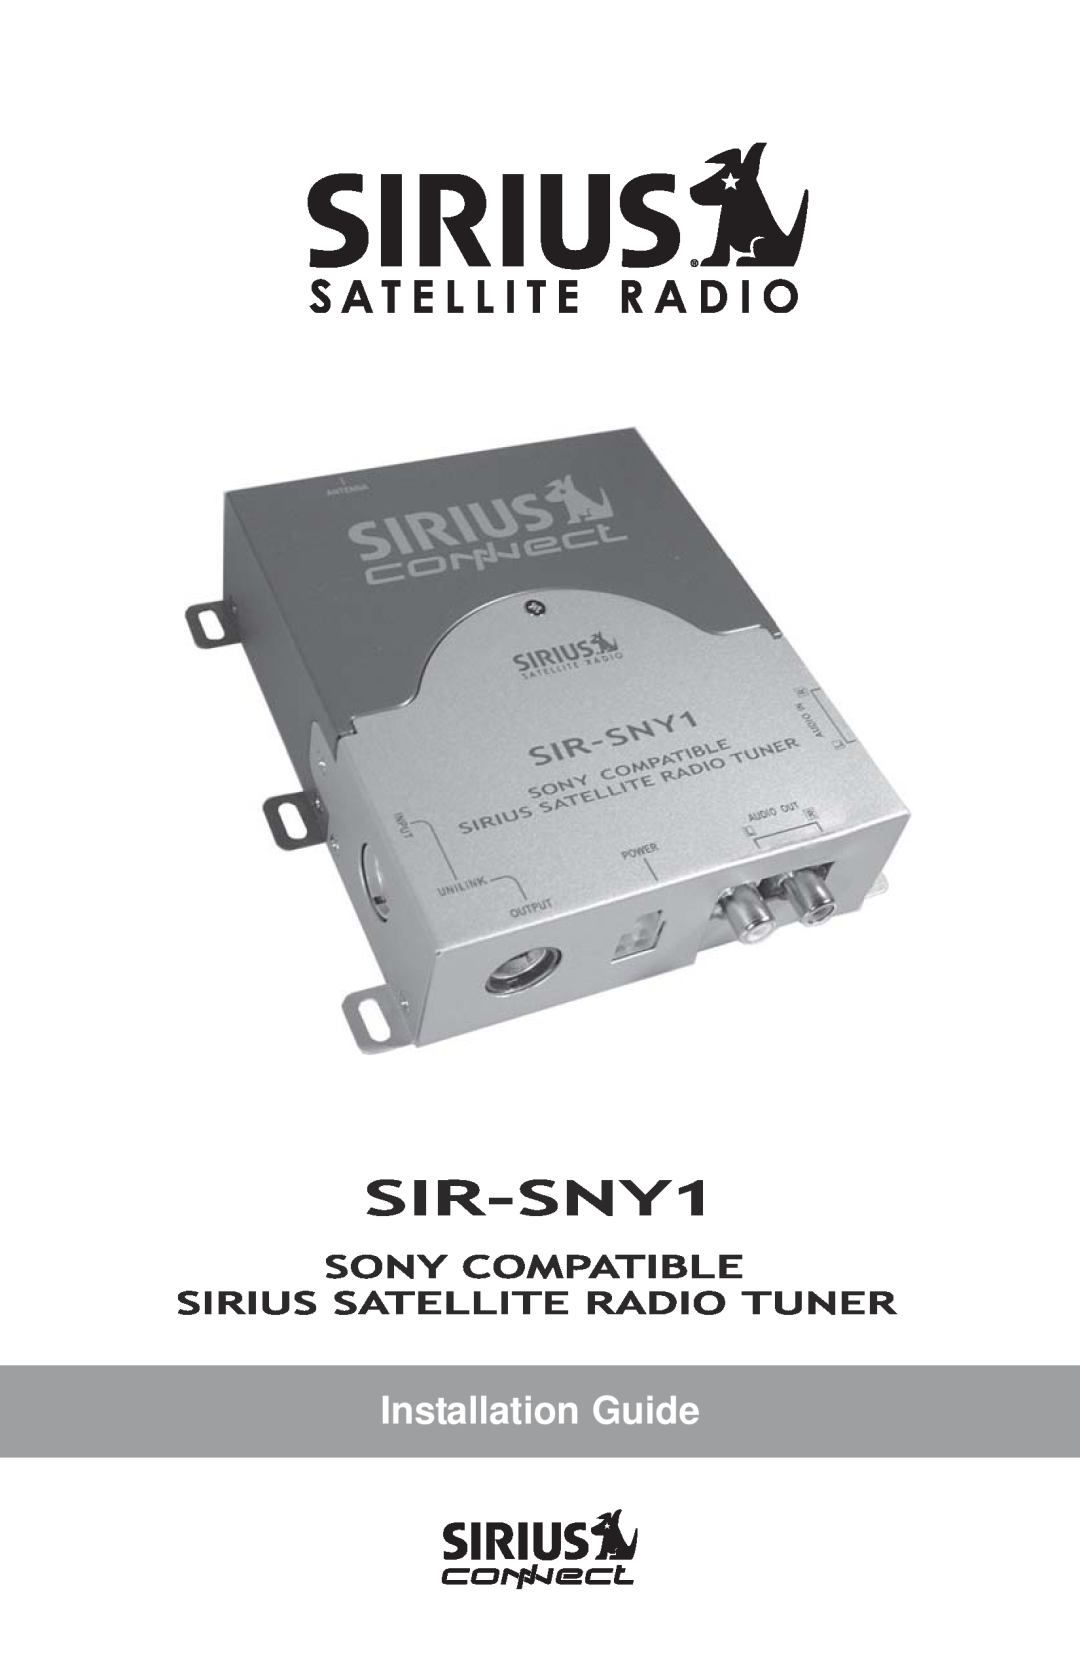 Sirius Satellite Radio SIR-SNY1 manual Installation Guide 